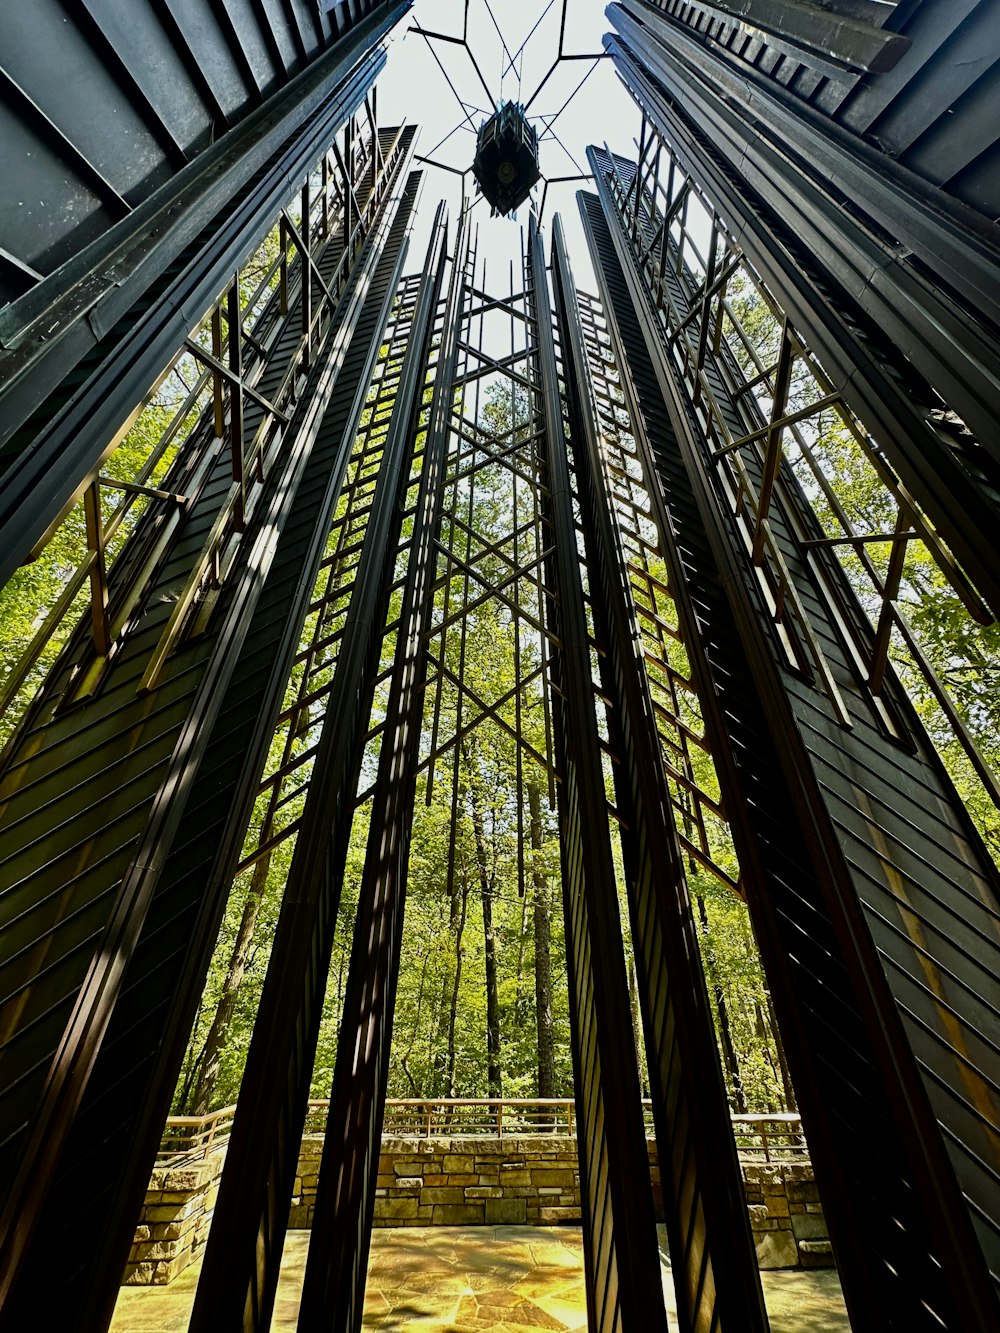 Mirando una estructura metálica en un bosque